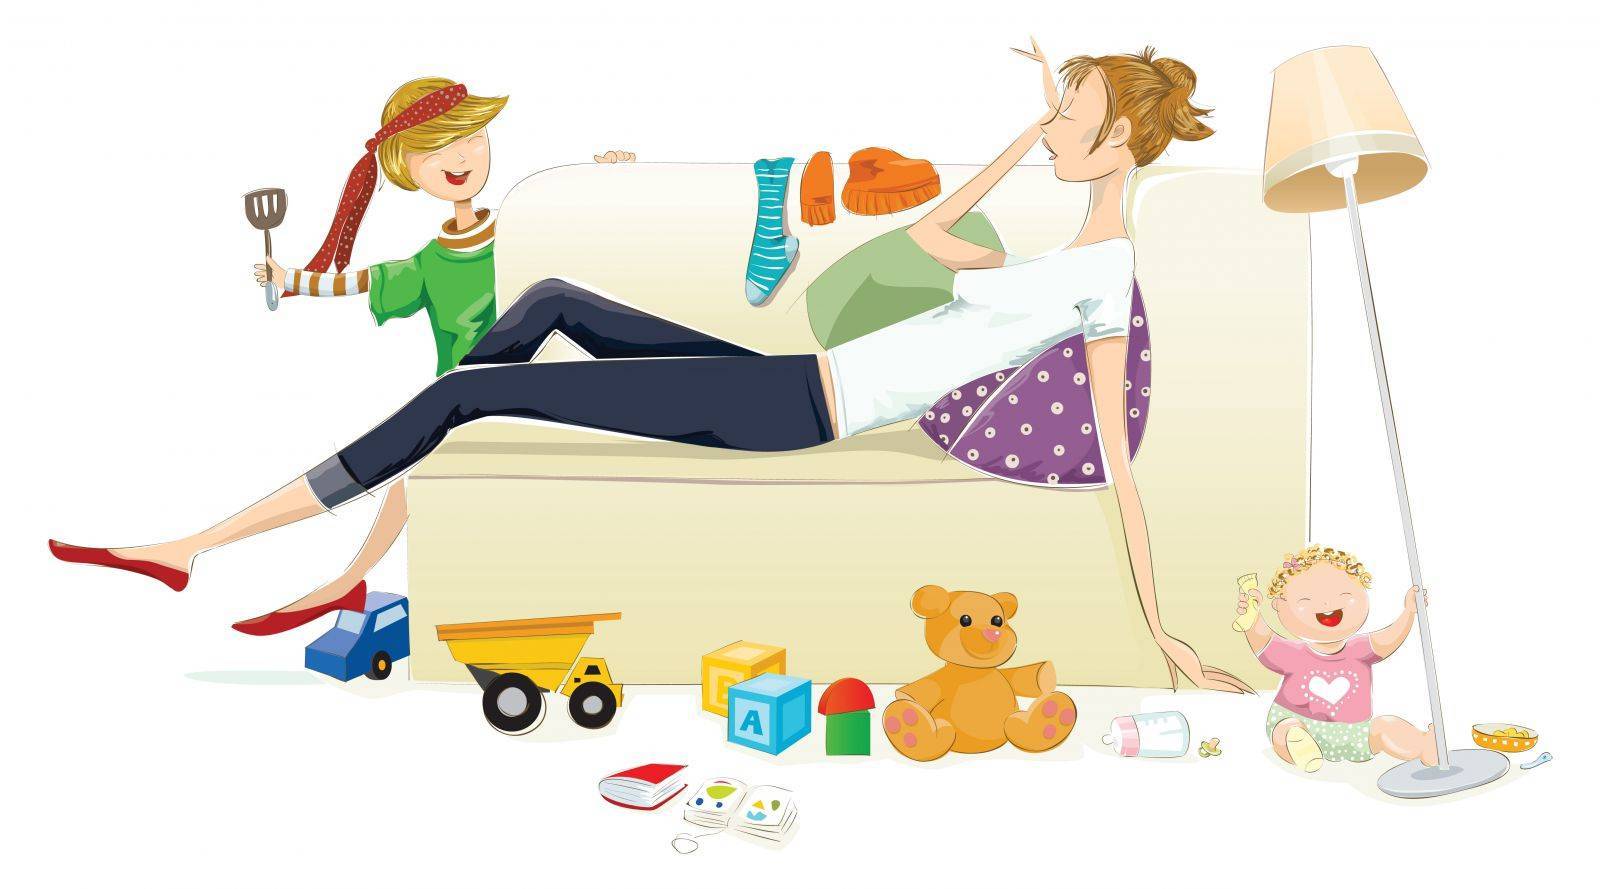 Многодетная мама: как найти баланс между домашними обязанностями, воспитанием детей и уходом за собой